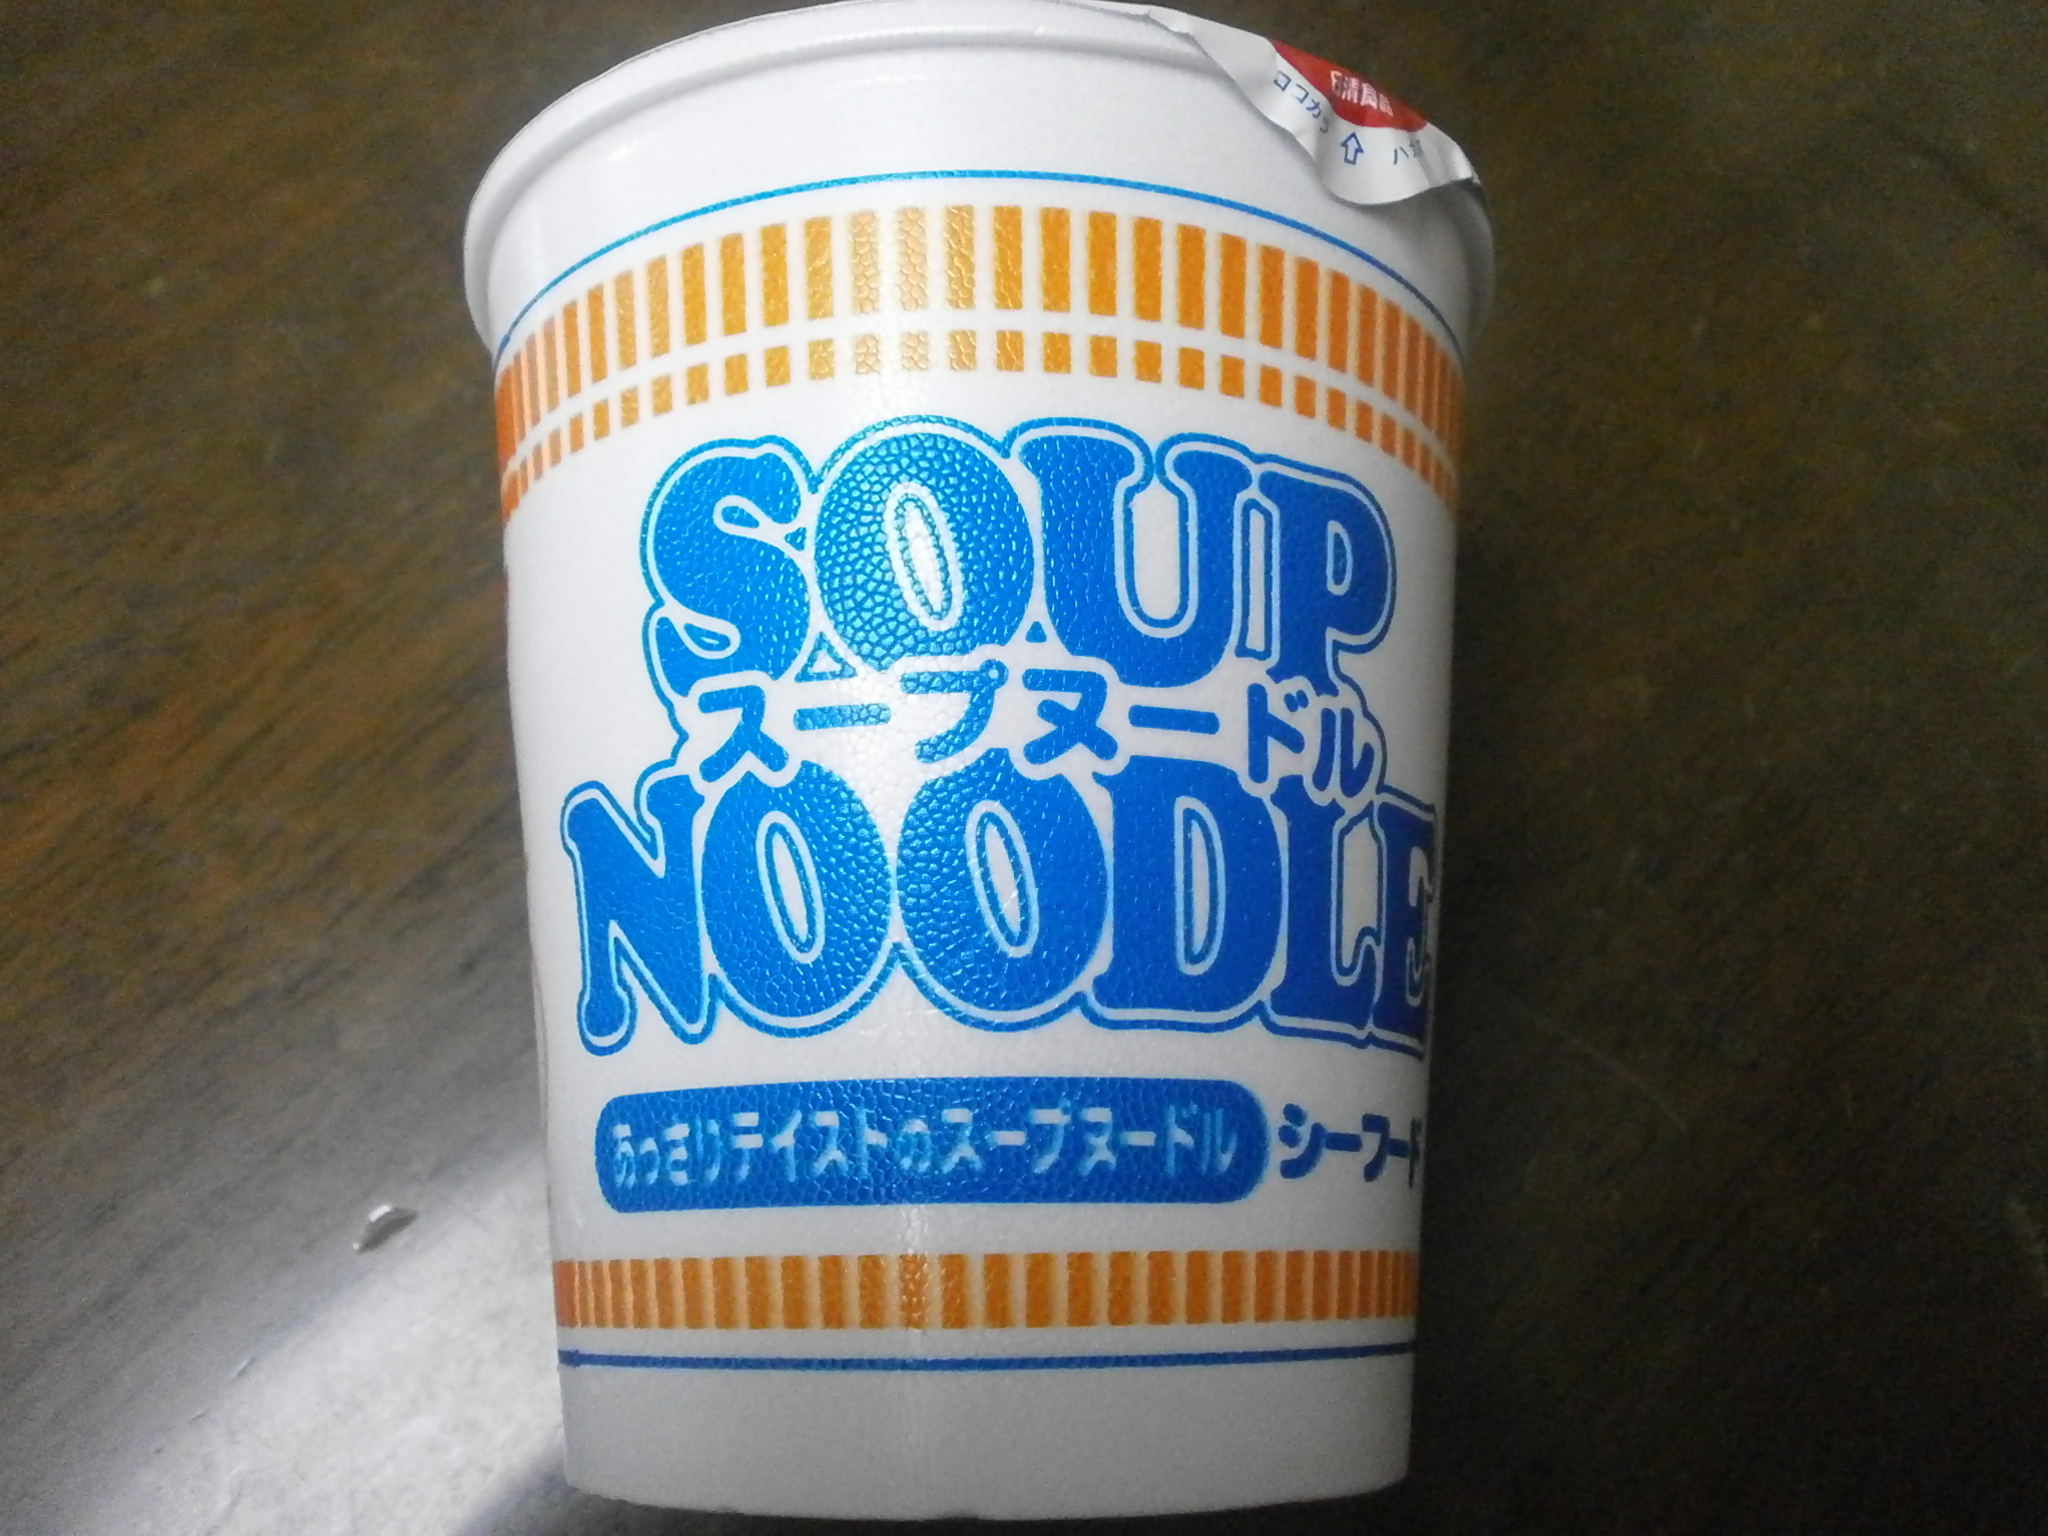 Che ad alto contenuto calorico? Noodle soup? Noodle soup (frutti di mare)?